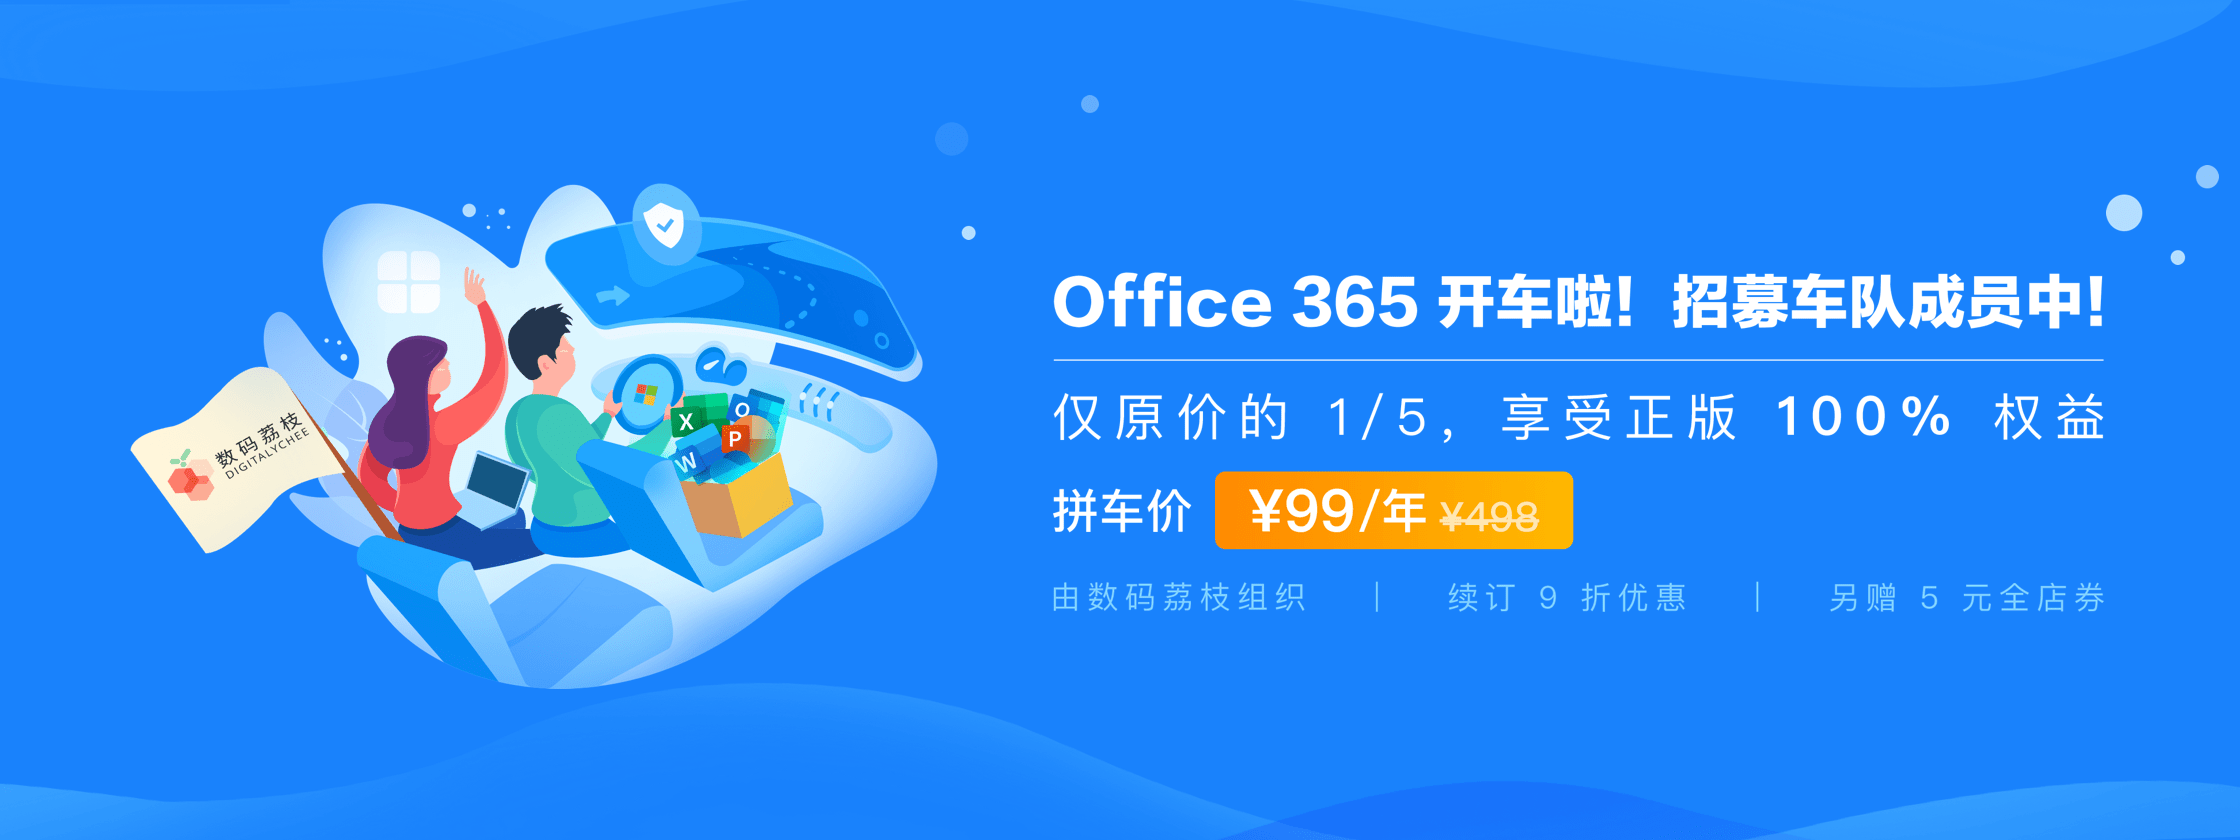 Office 365 数码荔枝组队开车啦！拼车价仅 99 元，一图看懂所有福利！